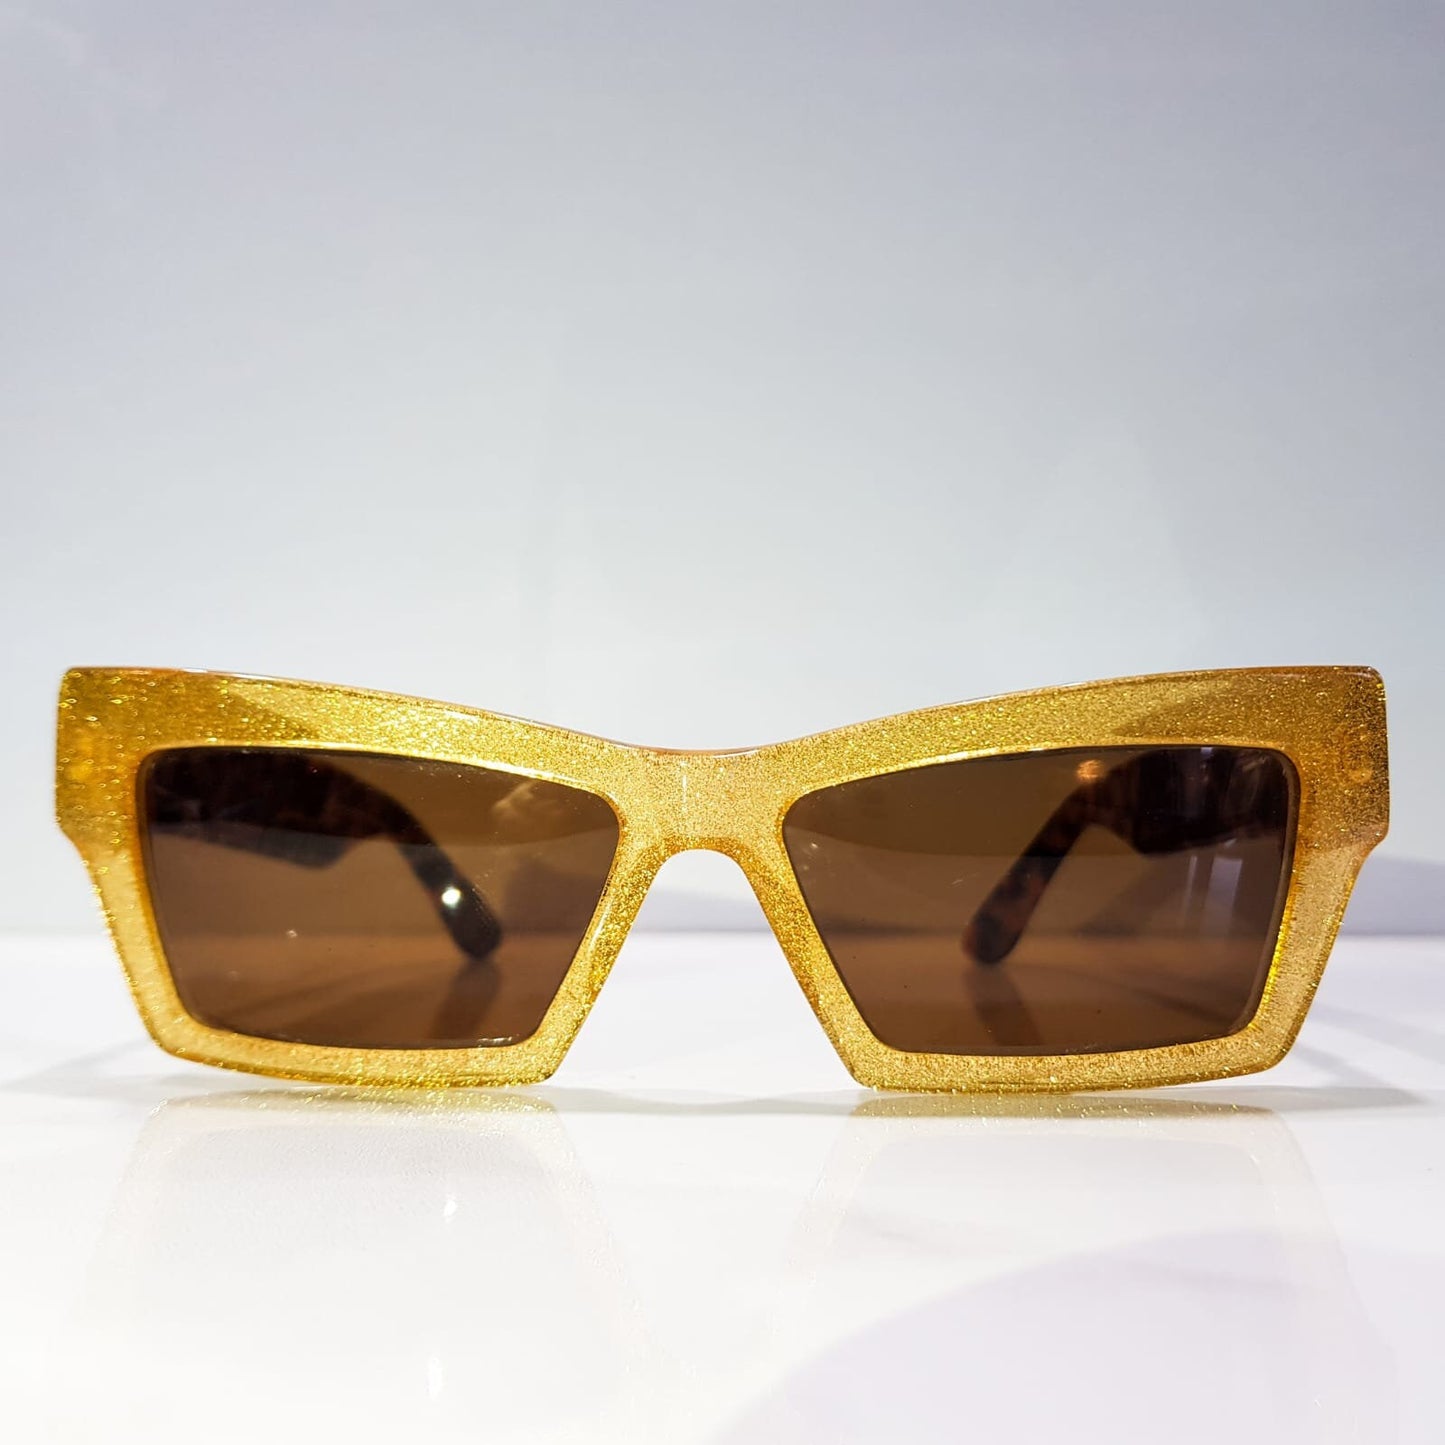 Gianni Versace s16 vintage sunglasses brille lunette